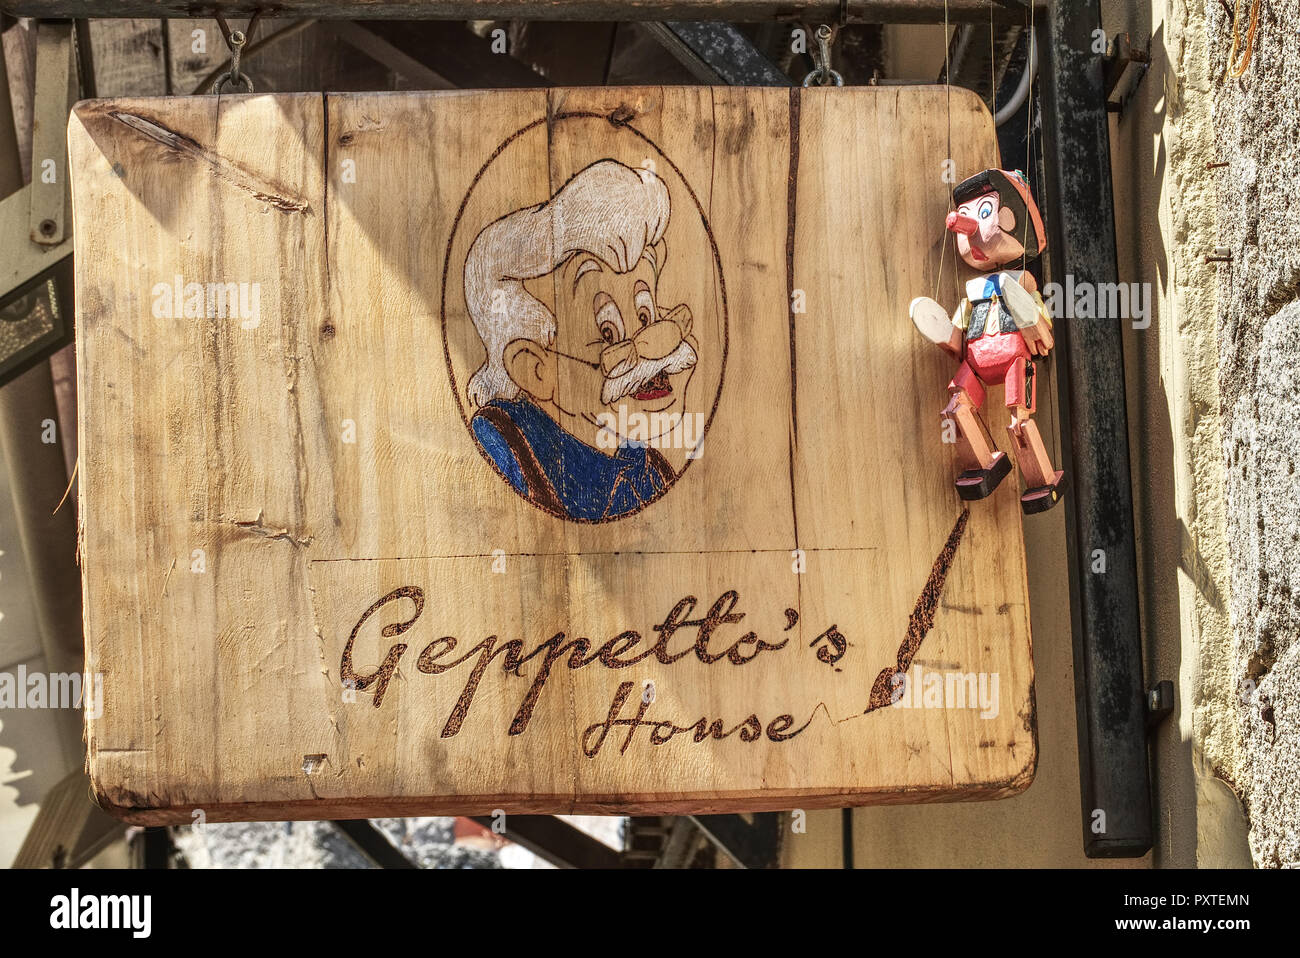 Pinoccio und Gepetto, Schild und Puppe Foto de stock